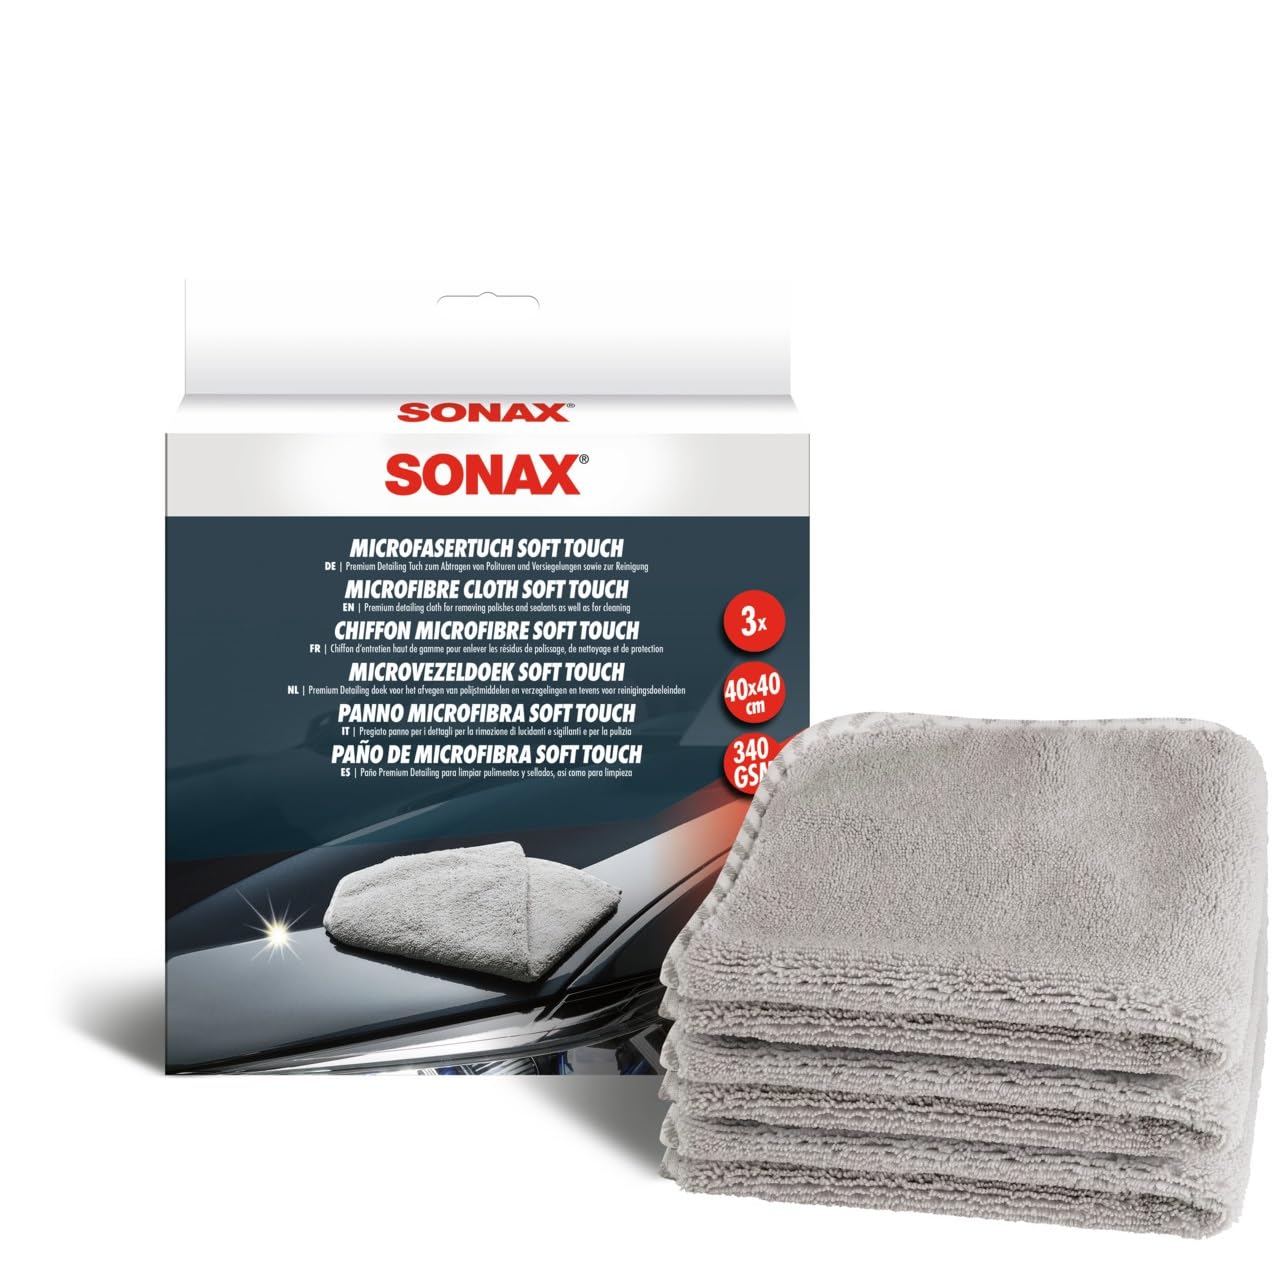 SONAX MicrofaserTuch Soft Touch (3 Stück) leistungsfähiges Detailing-Tuch für Polituren, Versiegelungen und den gesamten Innenraum, Weiß | Art-Nr. 04510000 von SONAX